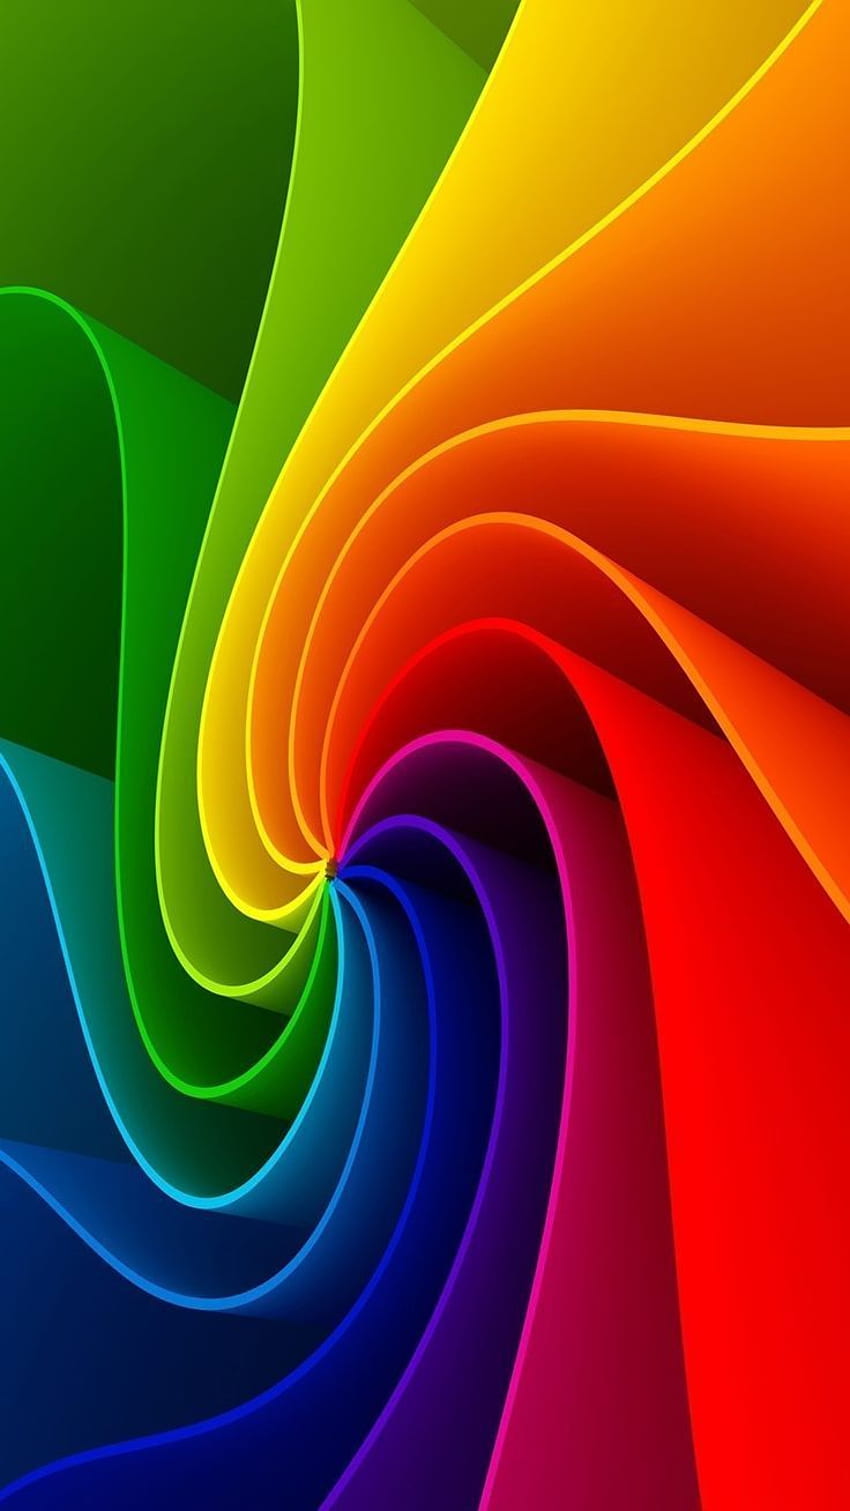 Regenbogenfarben - Regenboog kleuren. Regenbogen, Regenbogen, Regenbogenkunst HD-Handy-Hintergrundbild